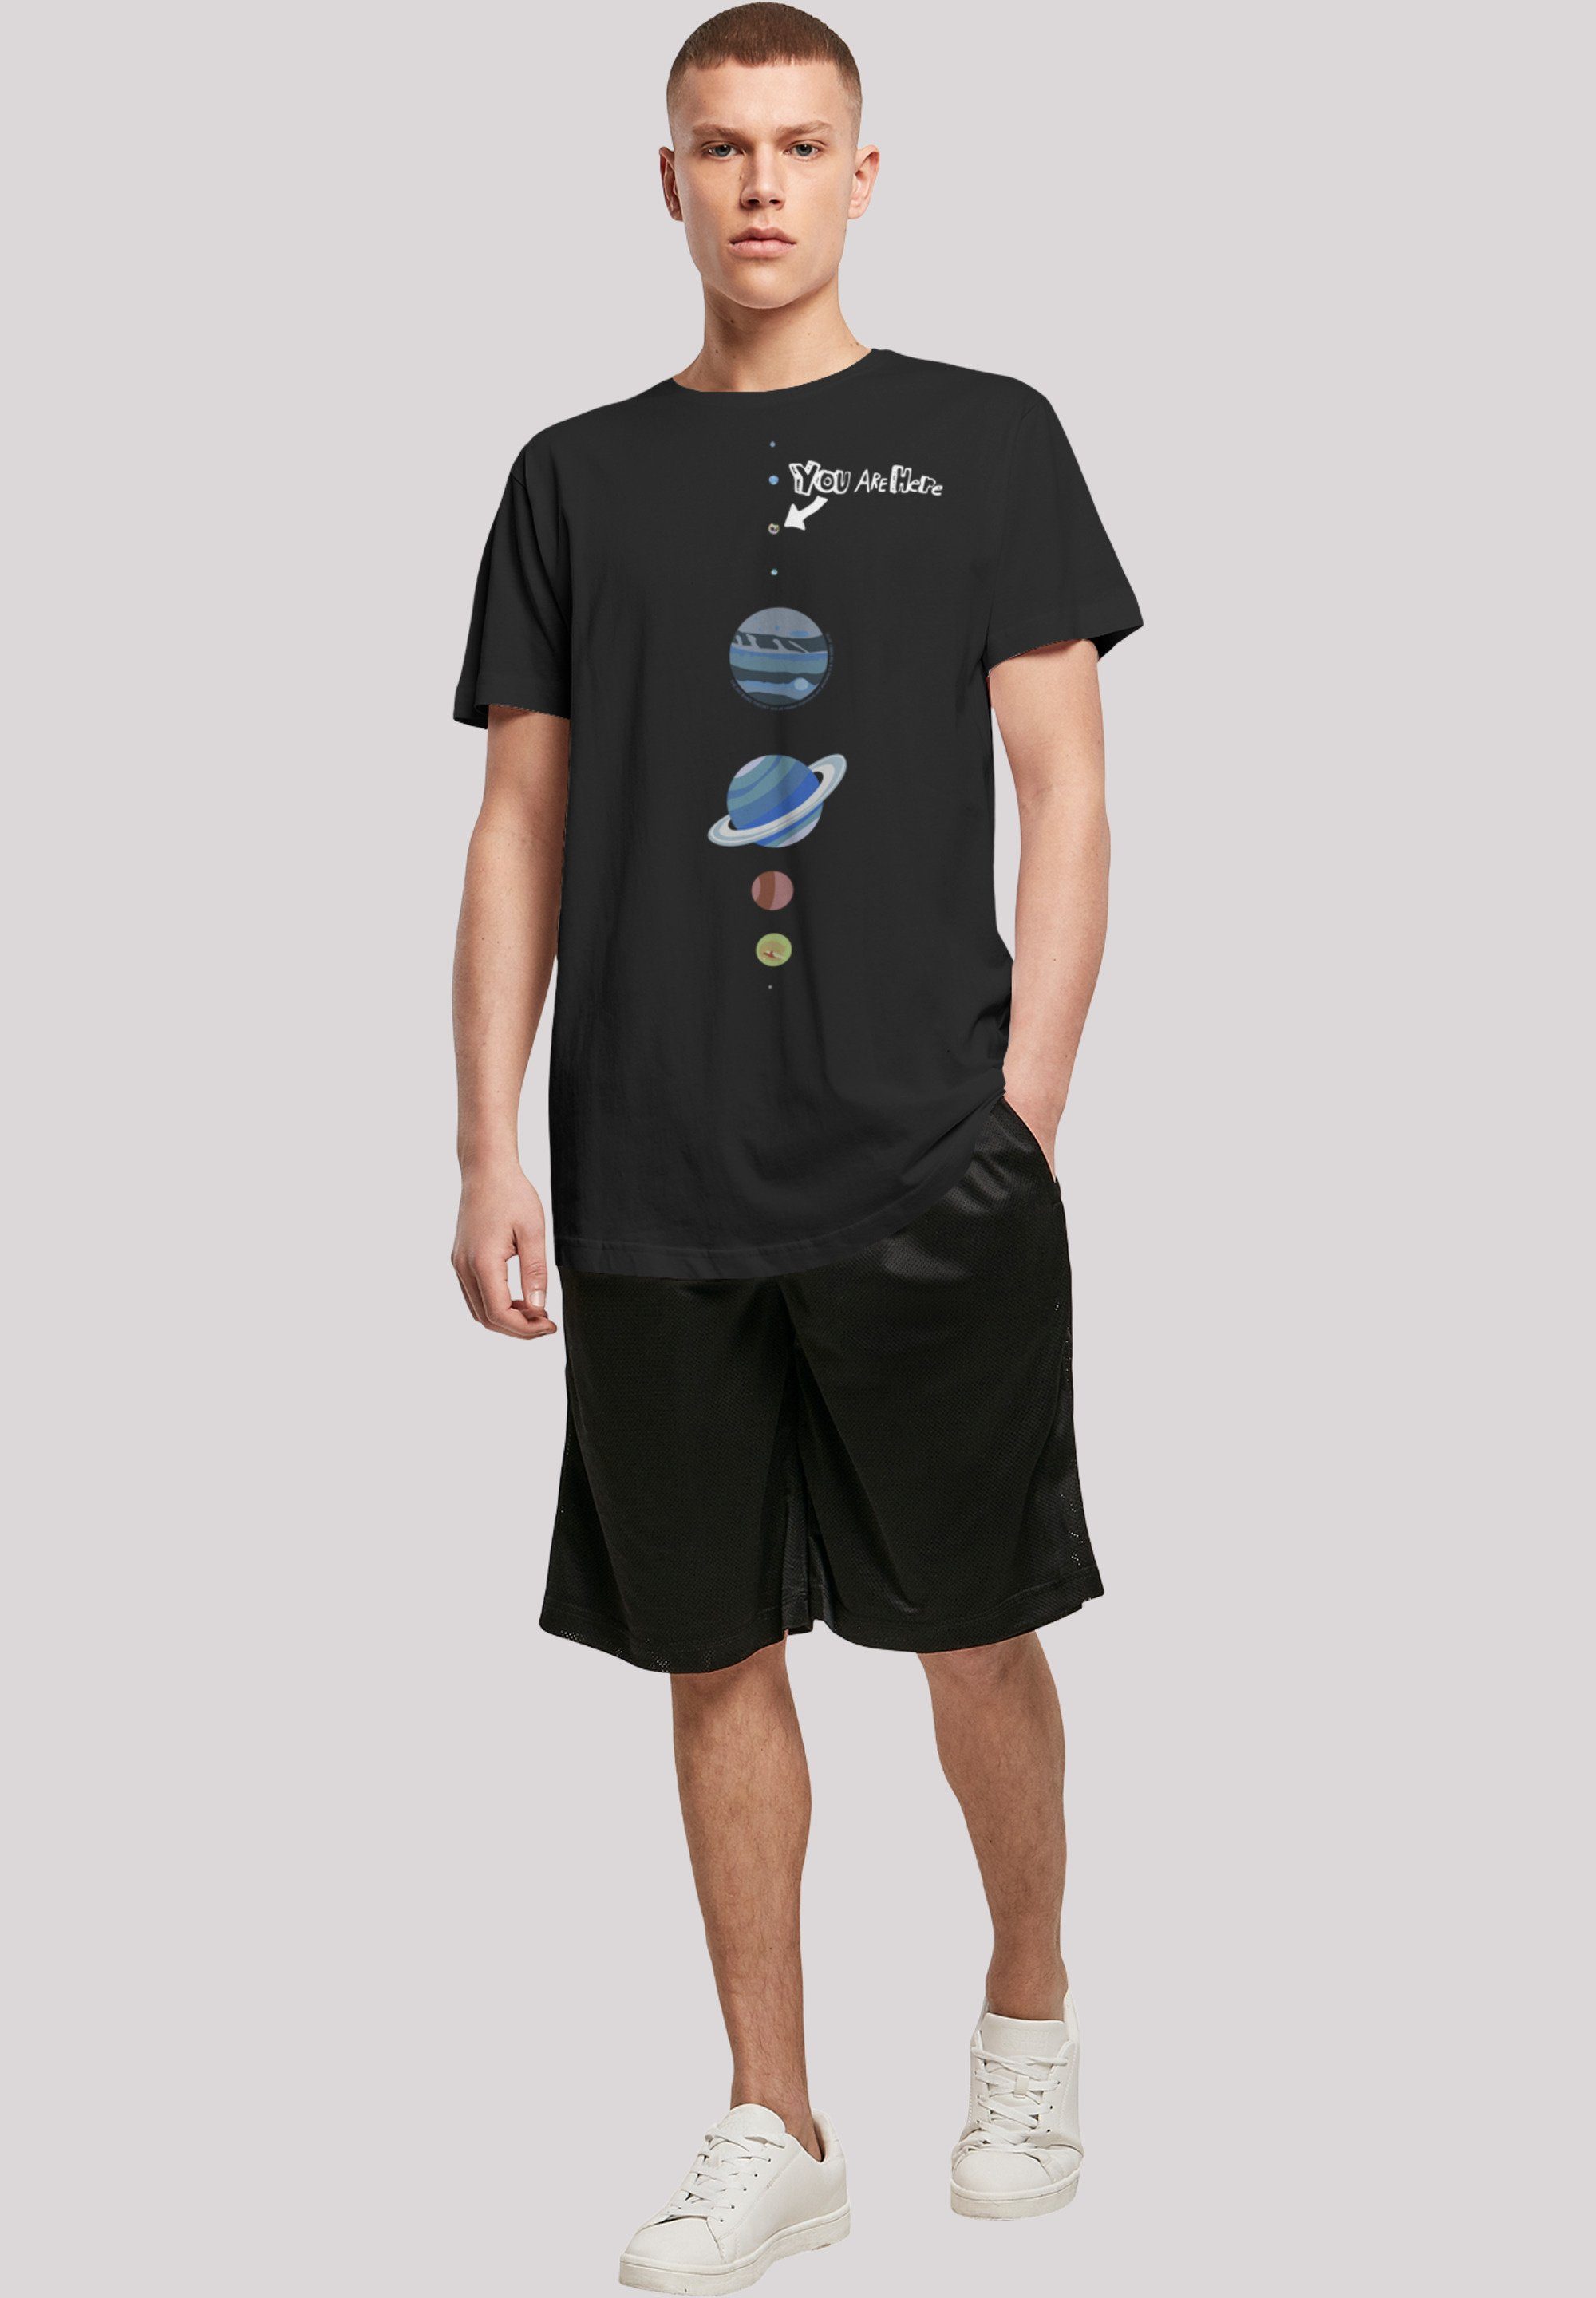 F4NT4STIC T-Shirt Long Cut Print Are 'Big Shirt Here' Bang Theory You